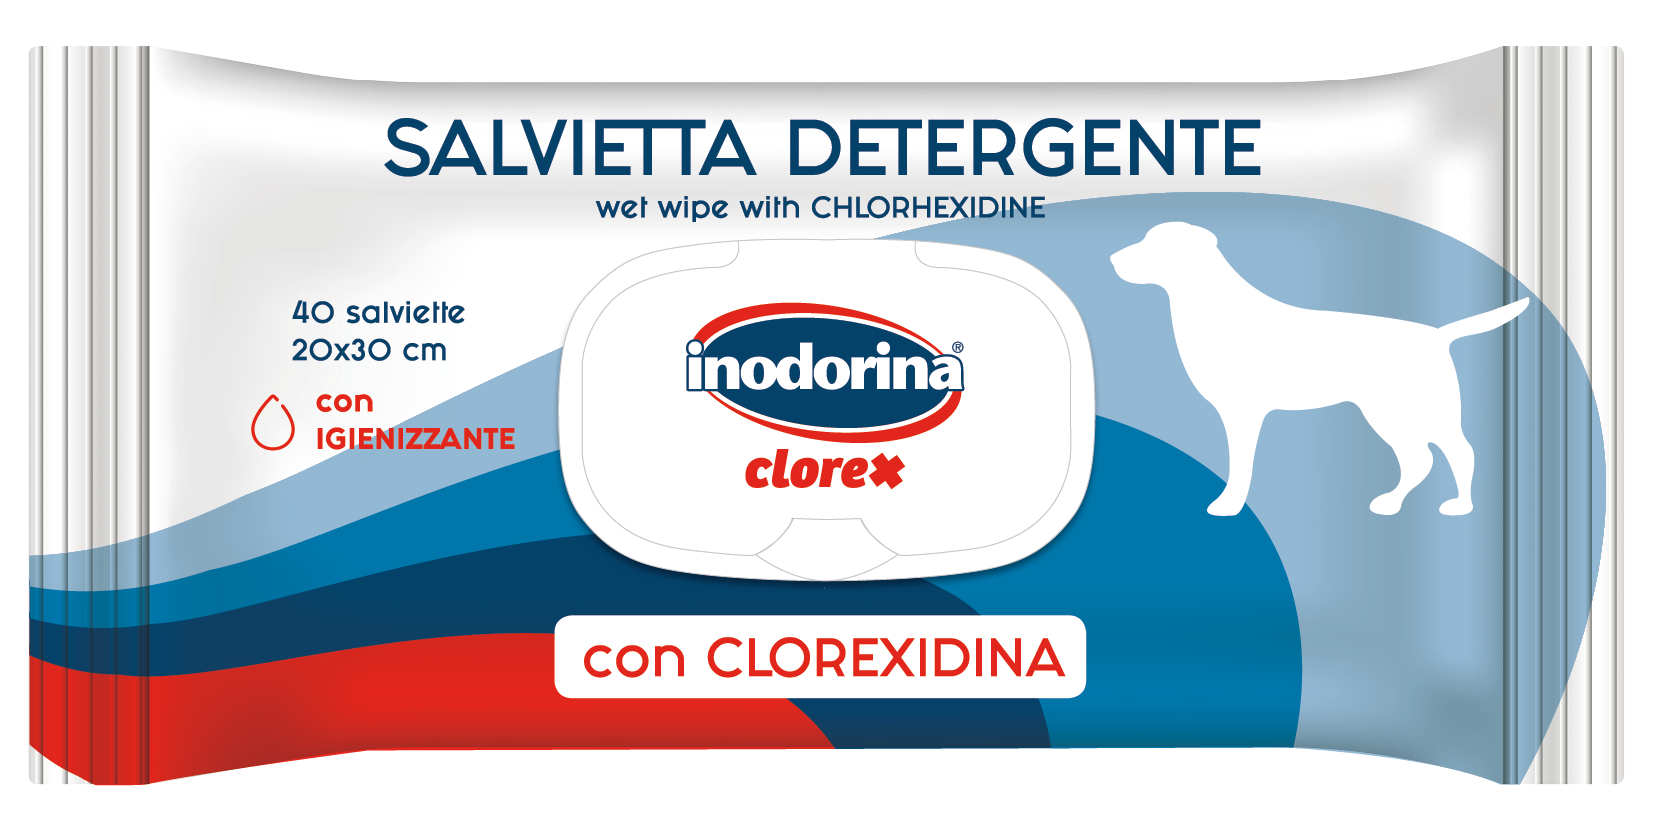 Inodorina Clorex 40 Salviette con Clorexidina per la Pulizia del Cane